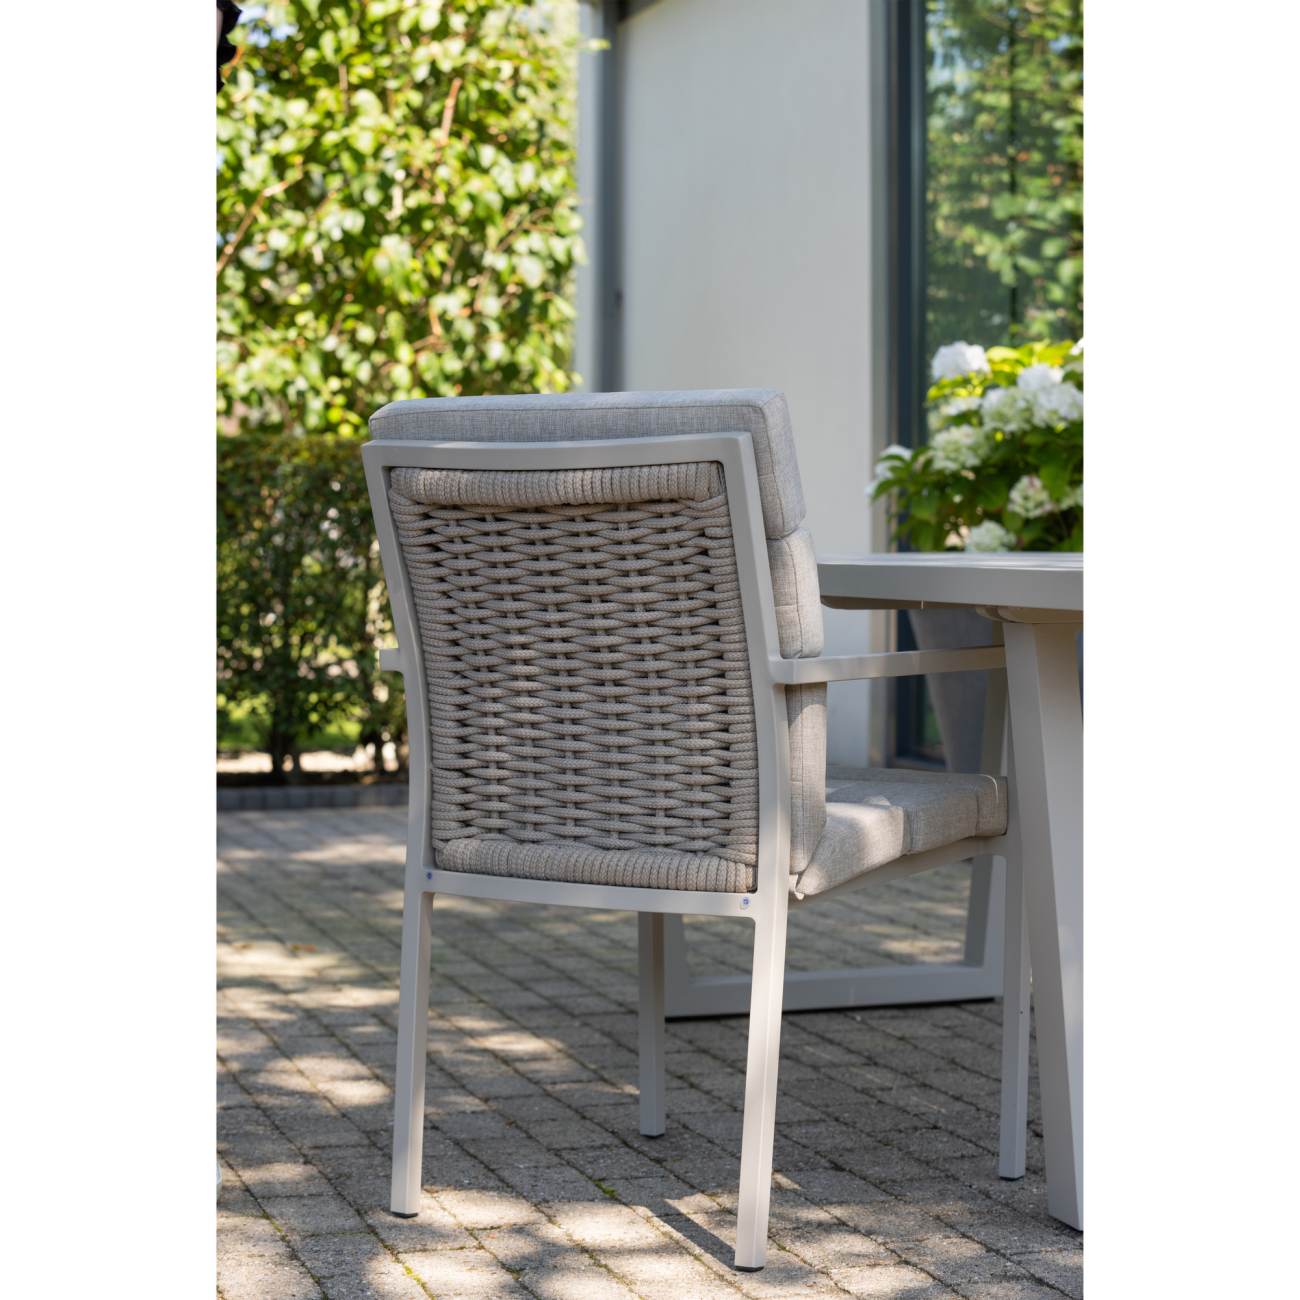 Der Gartenstuhl North überzeugt mit seinem modernen Design. Gefertigt wurde er aus Stoff, welches einen Sand Farbton besitzt. Das Gestell ist aus Aluminium und hat eine Sand Farbe. Der Stuhl besitzt eine Sitzhöhe von 49 cm.